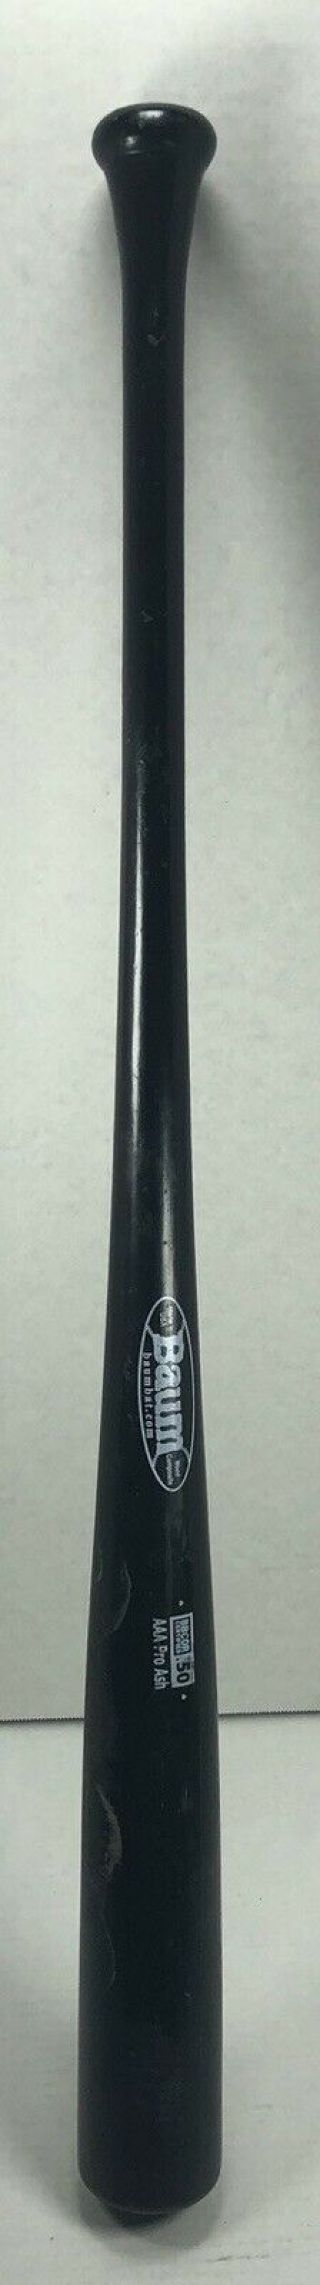 Baum Baseball Bat 34/32 - 2 Flared Knob Rare Bat -